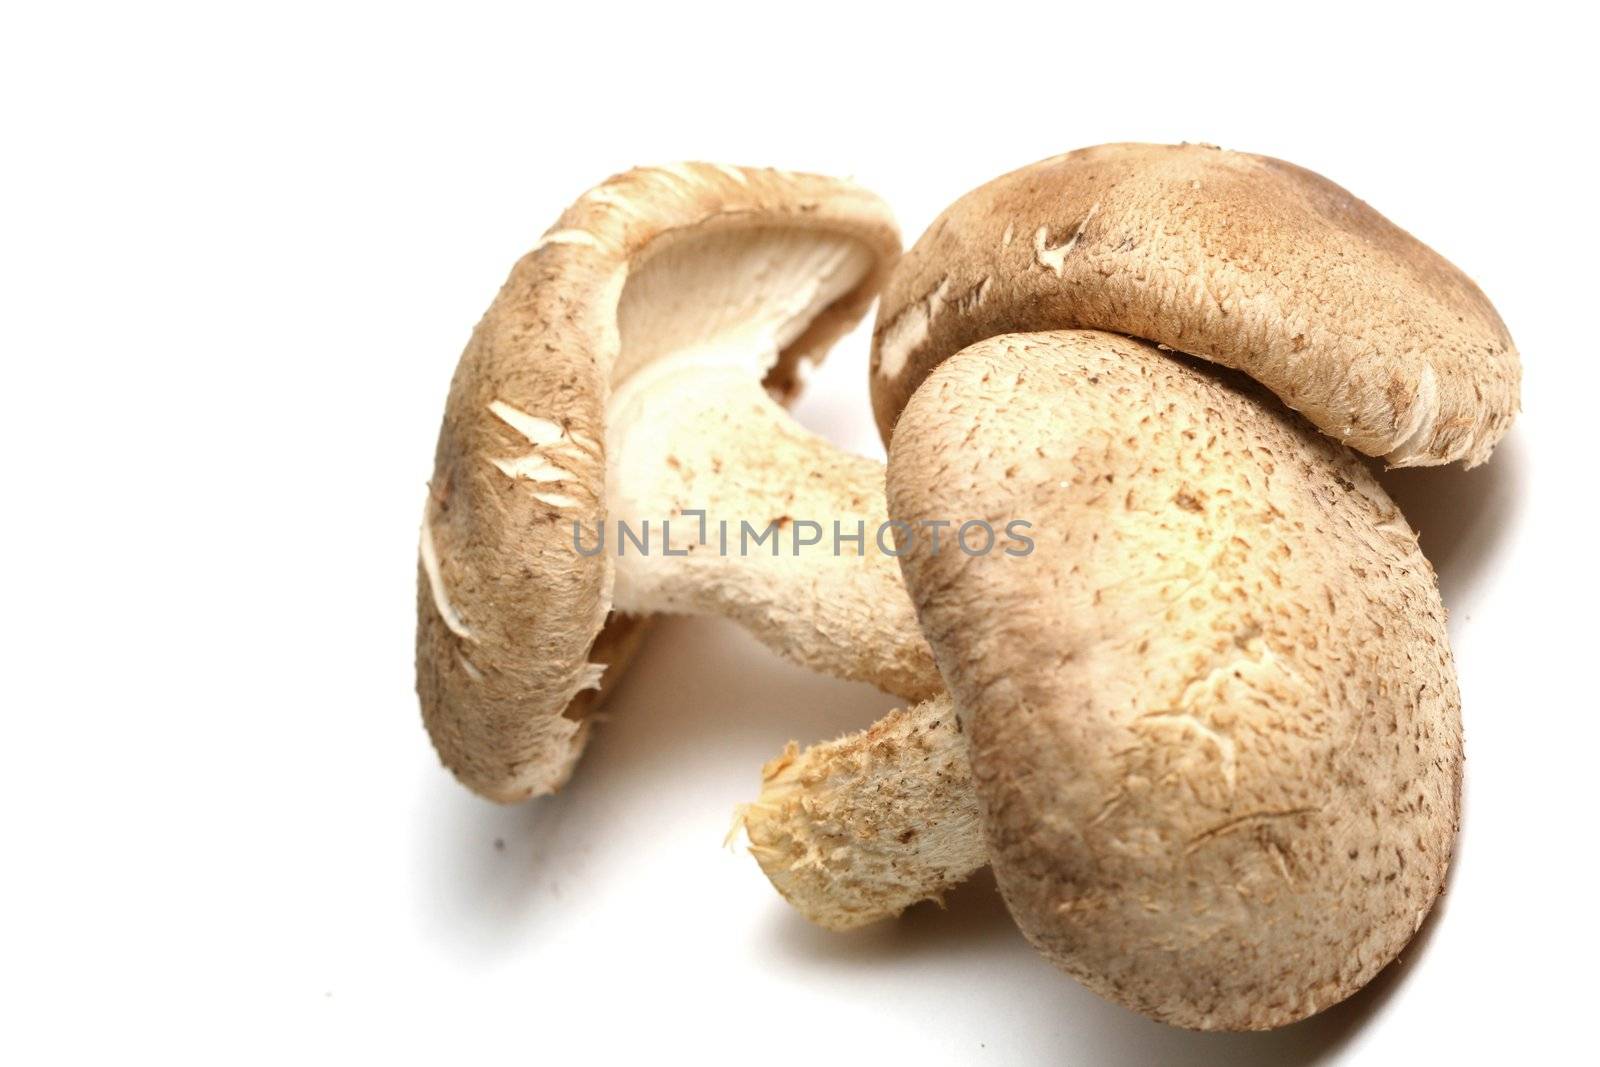 shiitake mushrooms isolated on white background